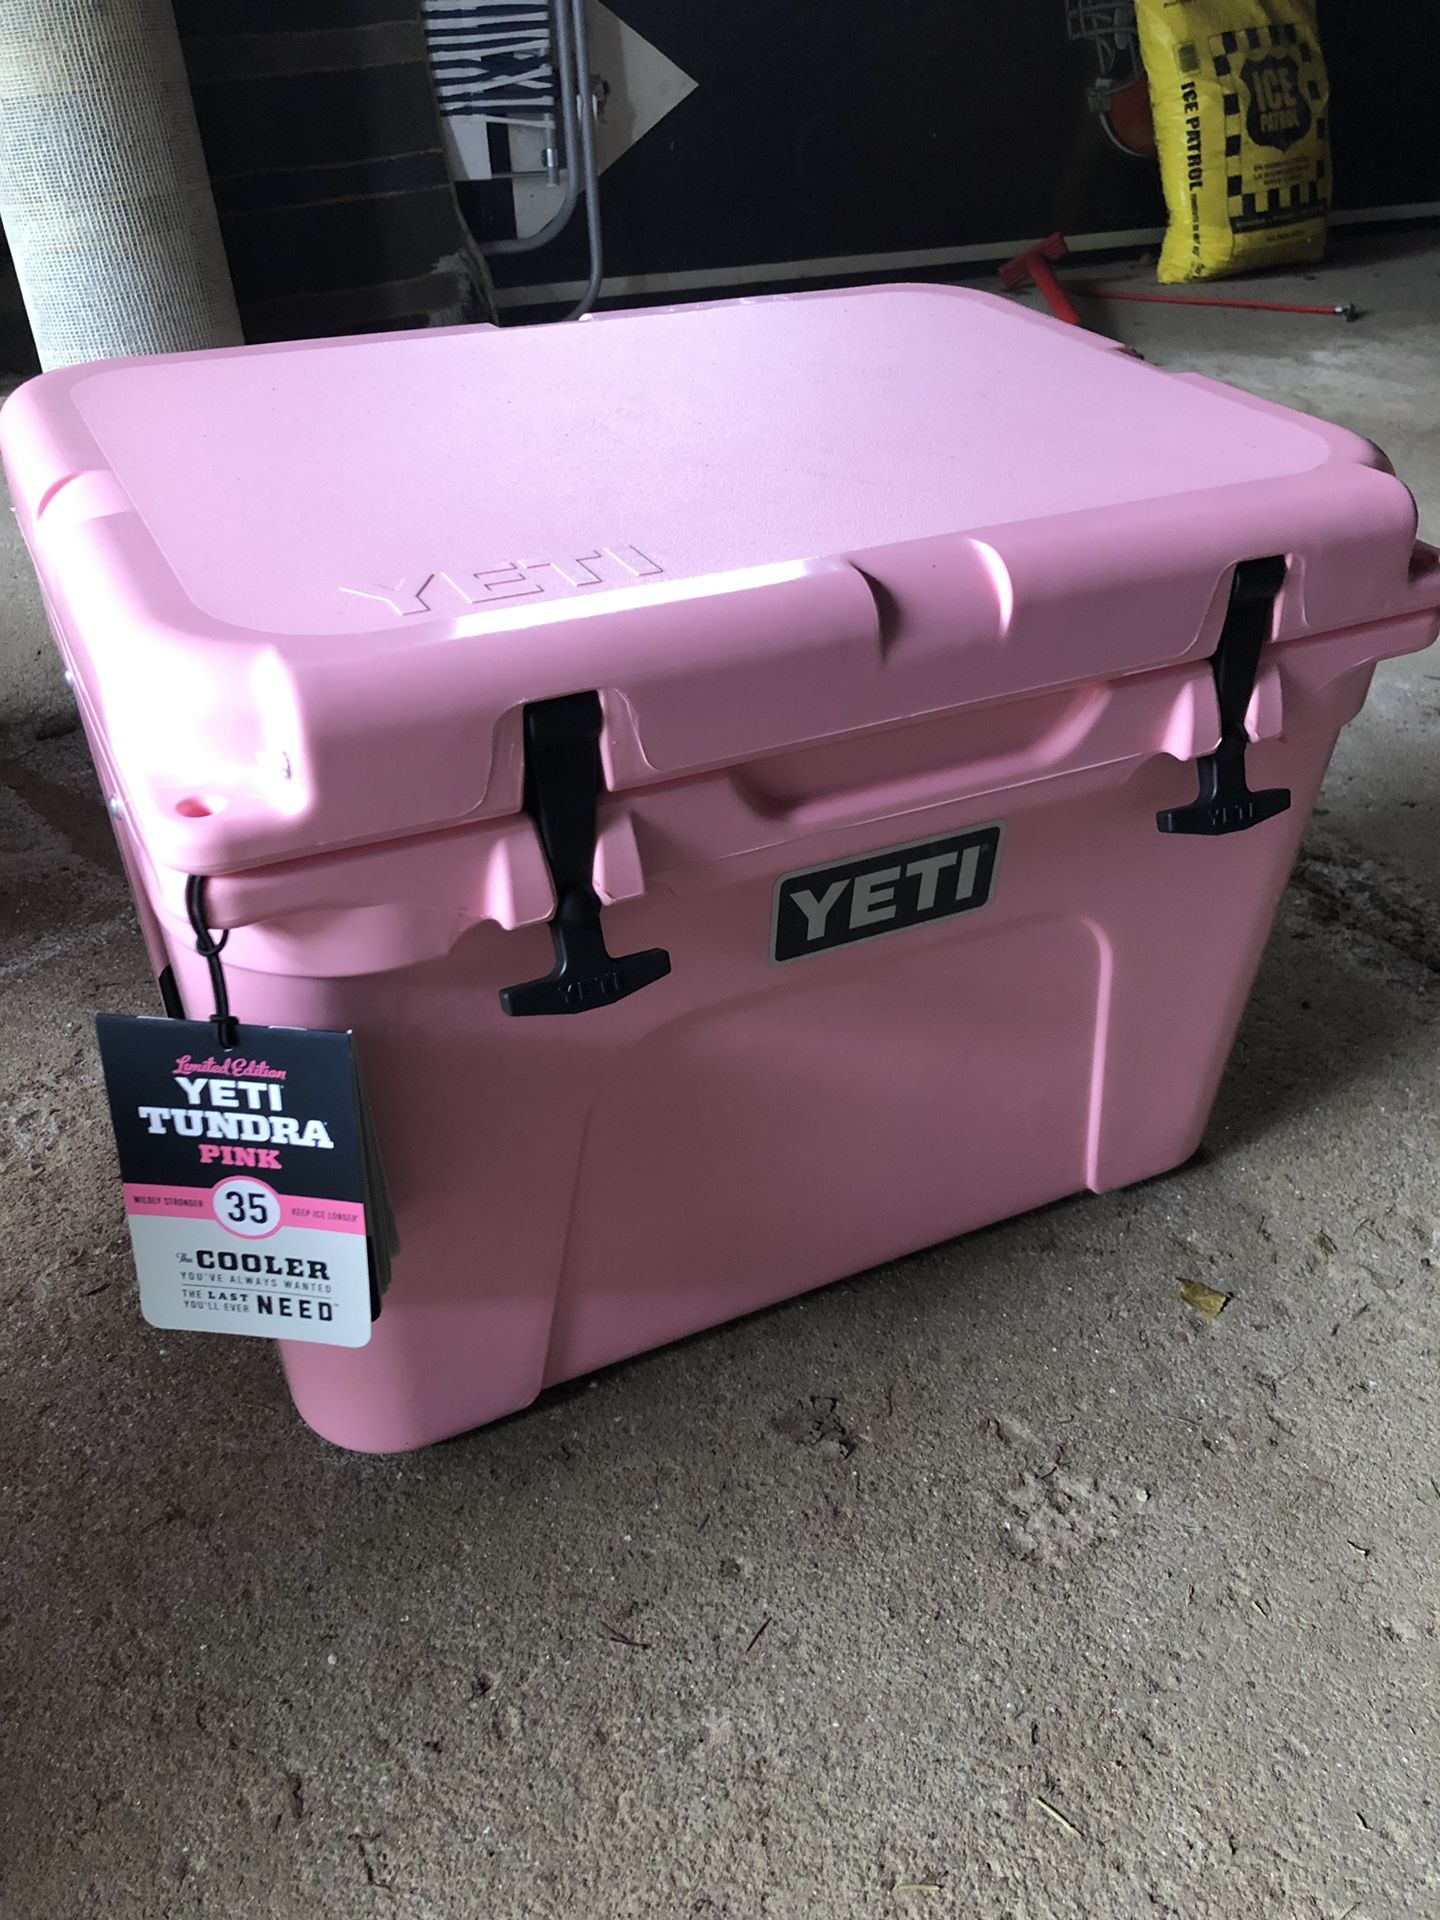 Pink yeti cooler - 35 quart